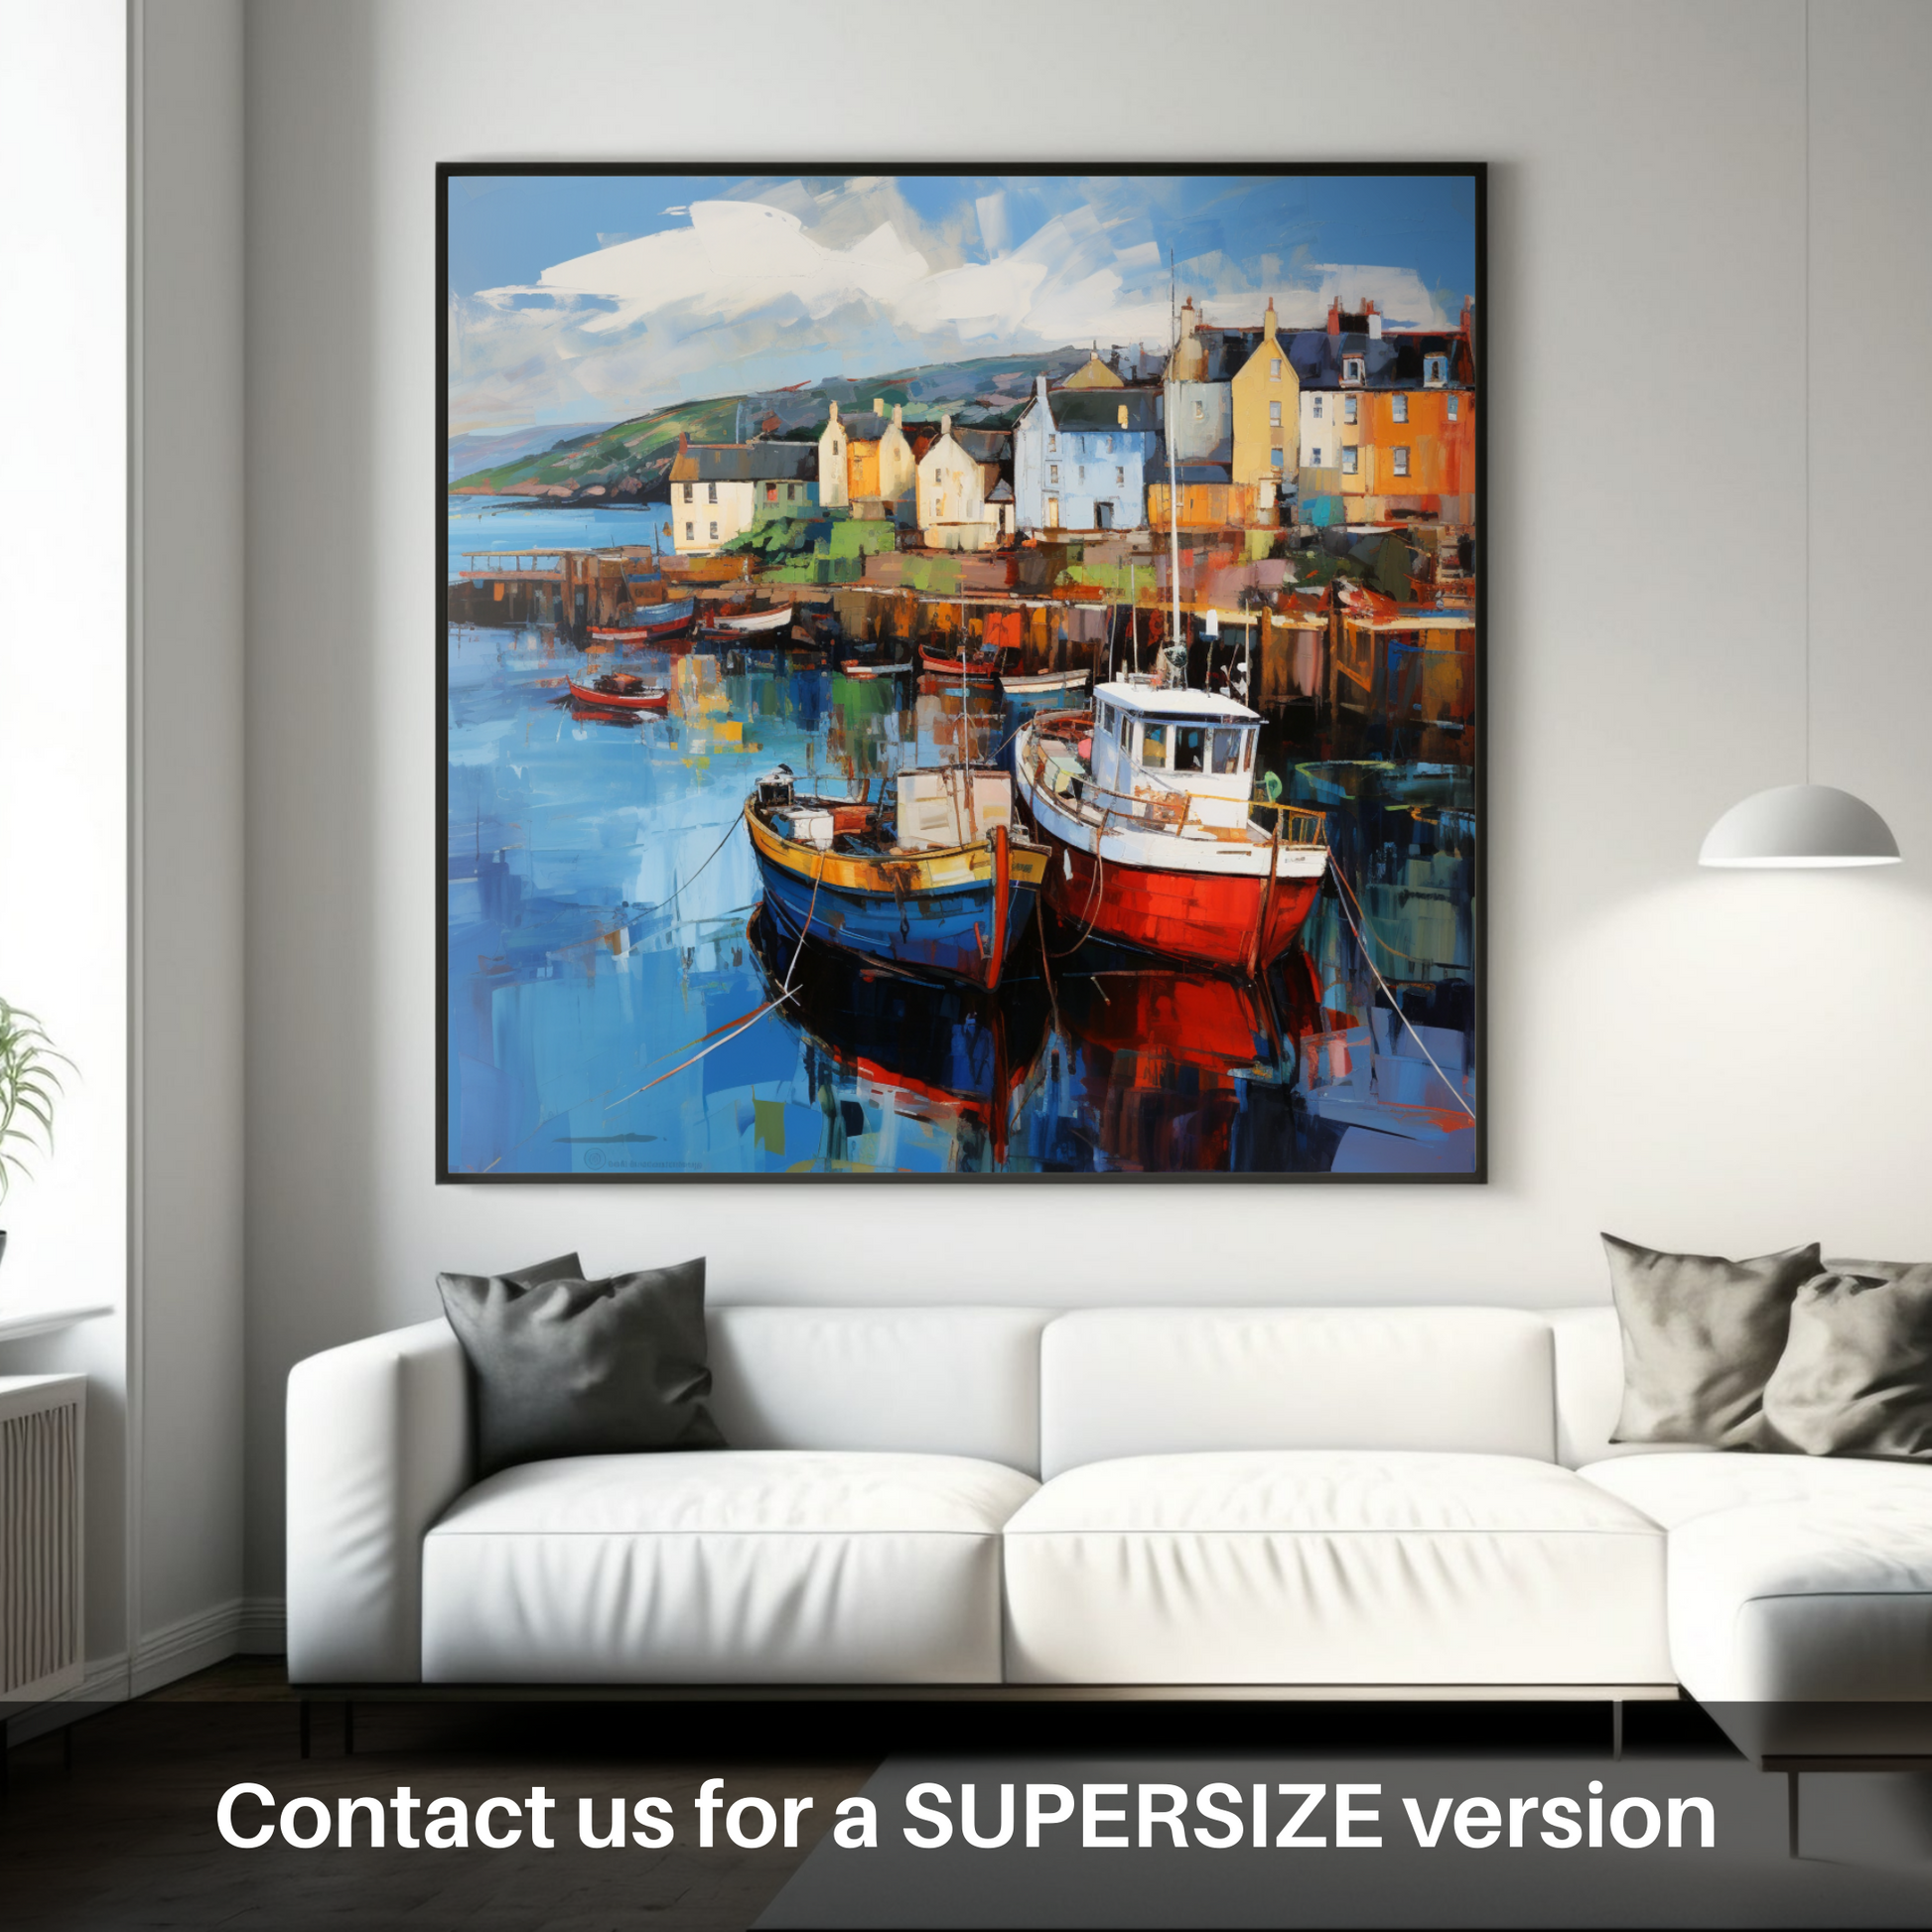 Huge supersize print of Millport Harbour, Isle of Cumbrae